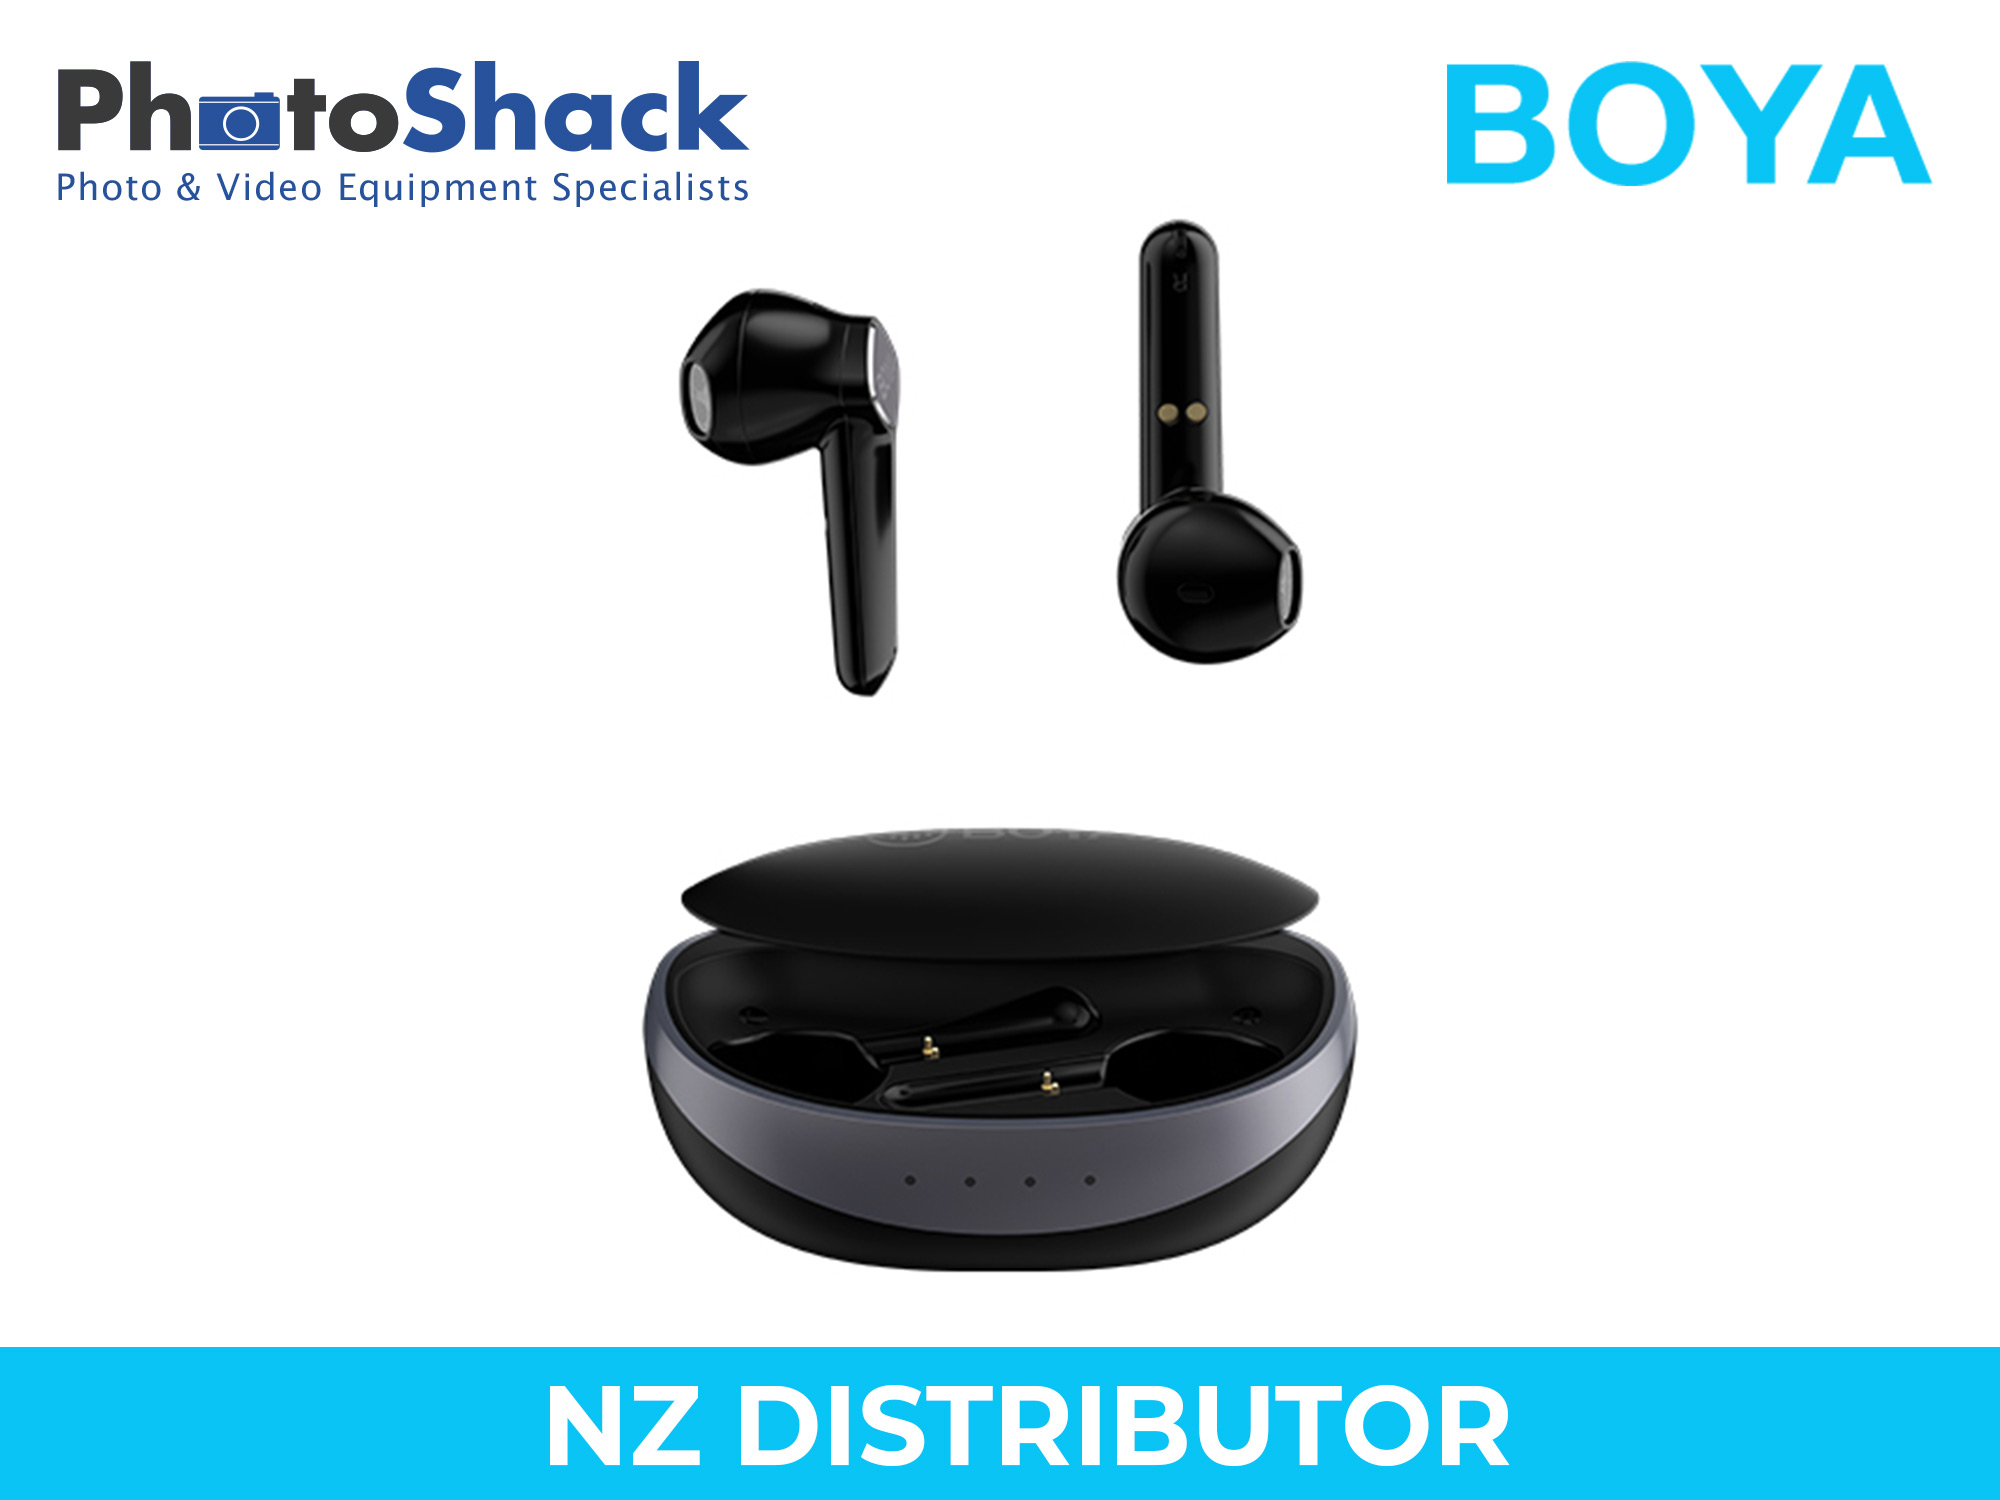 Boya Wireless Stereo Earbuds (Black)